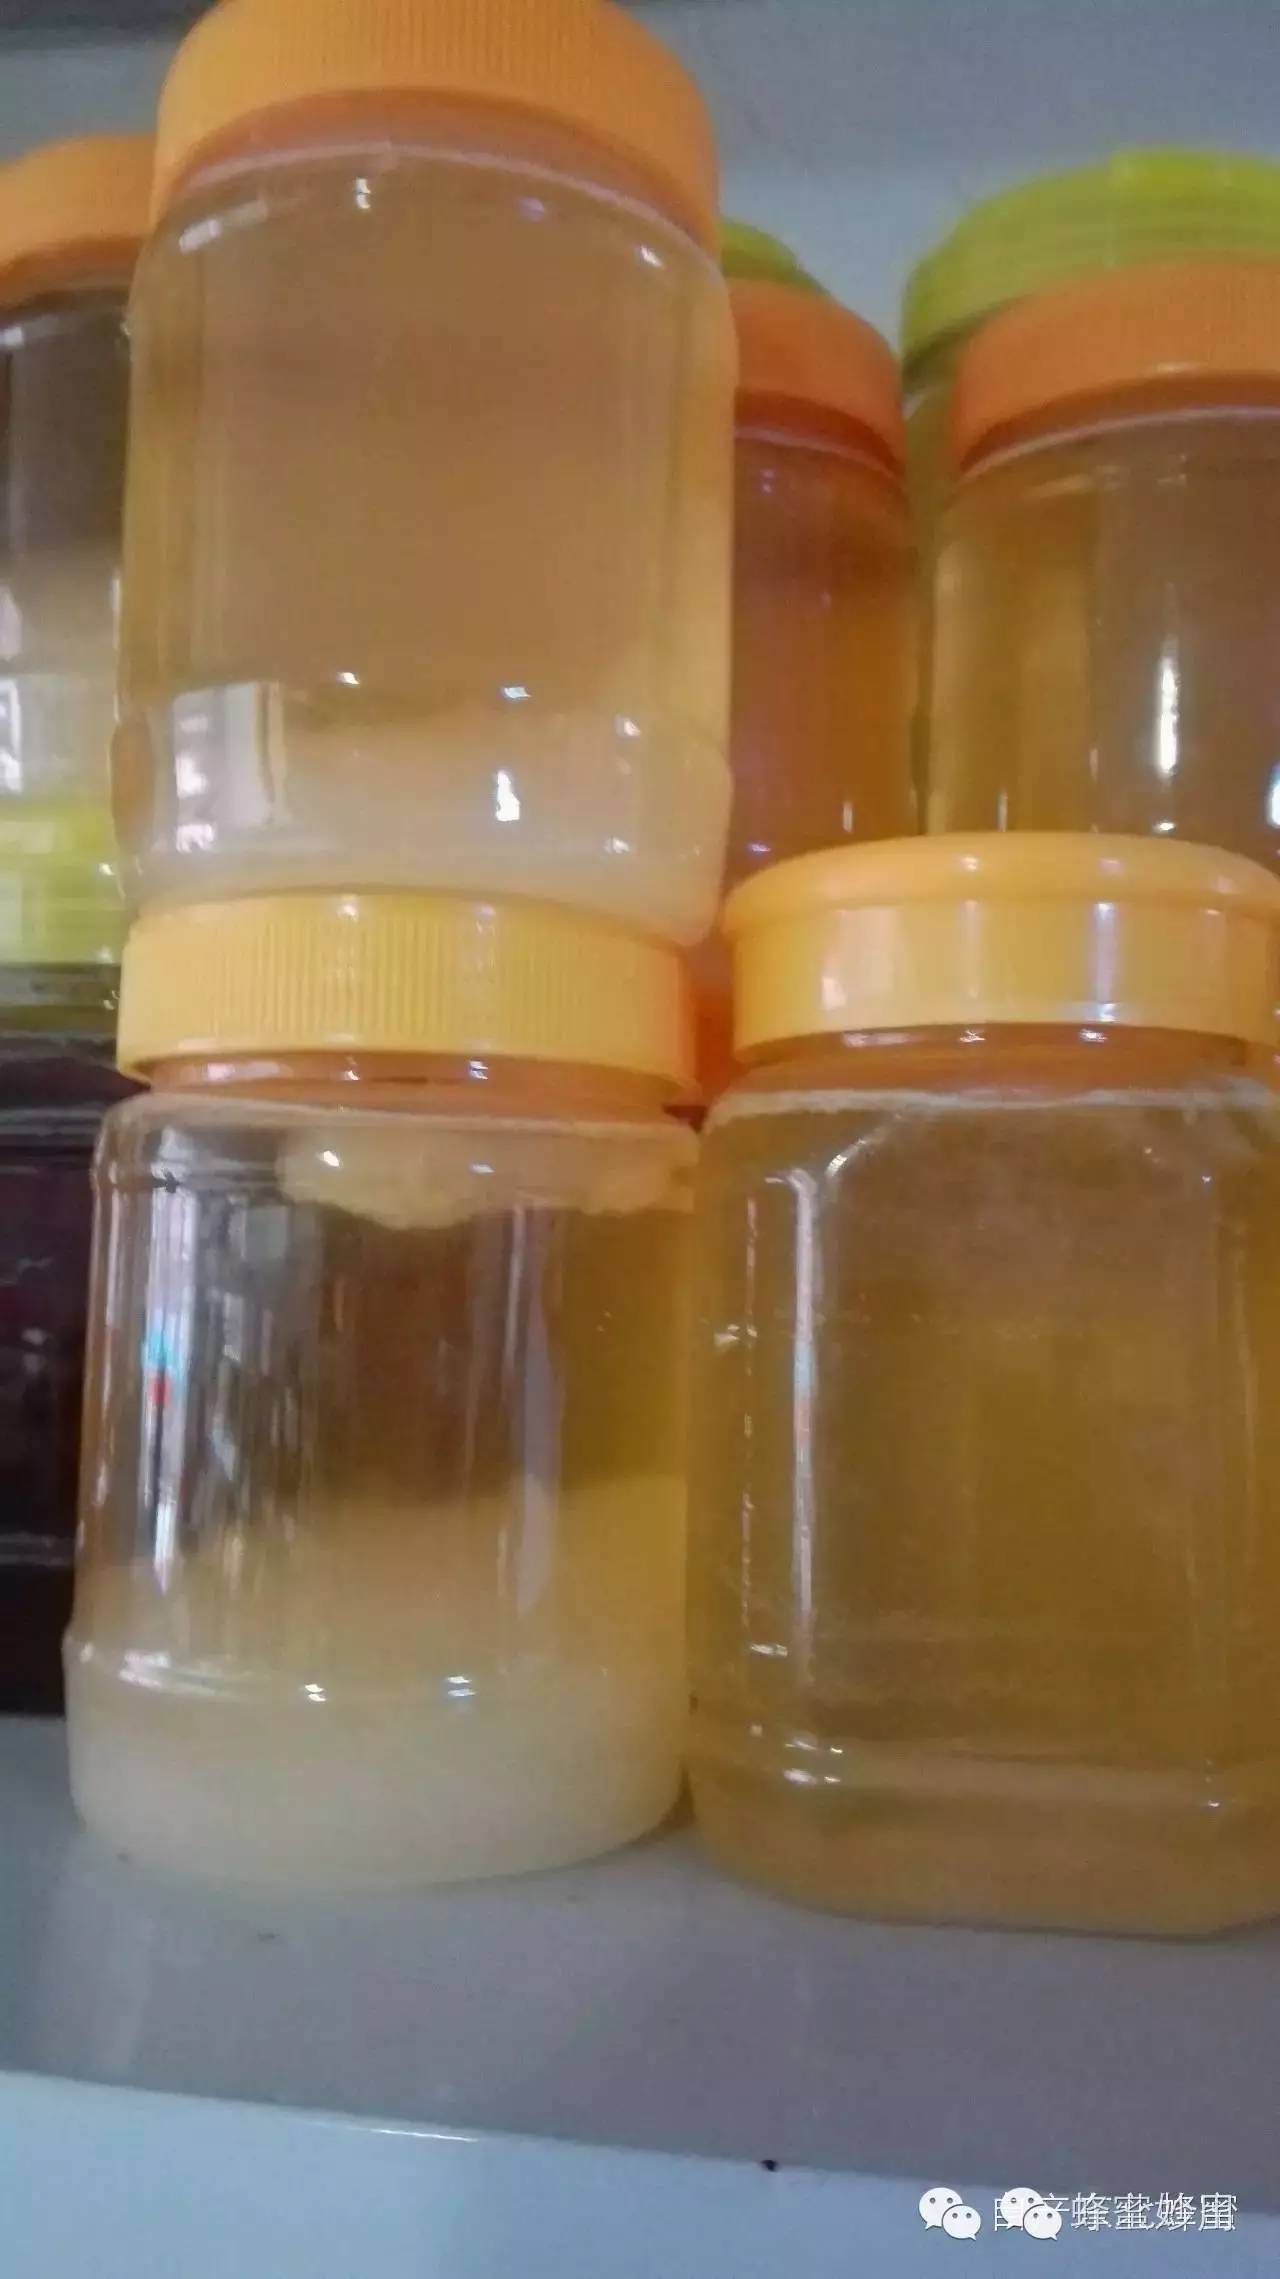 蜂蜜中风 1升水能溶解多少蜂蜜 天喔蜂蜜柚子茶冠名百变大咖秀 蜂蜜绿豆面膜 蜂蜜提高性功能